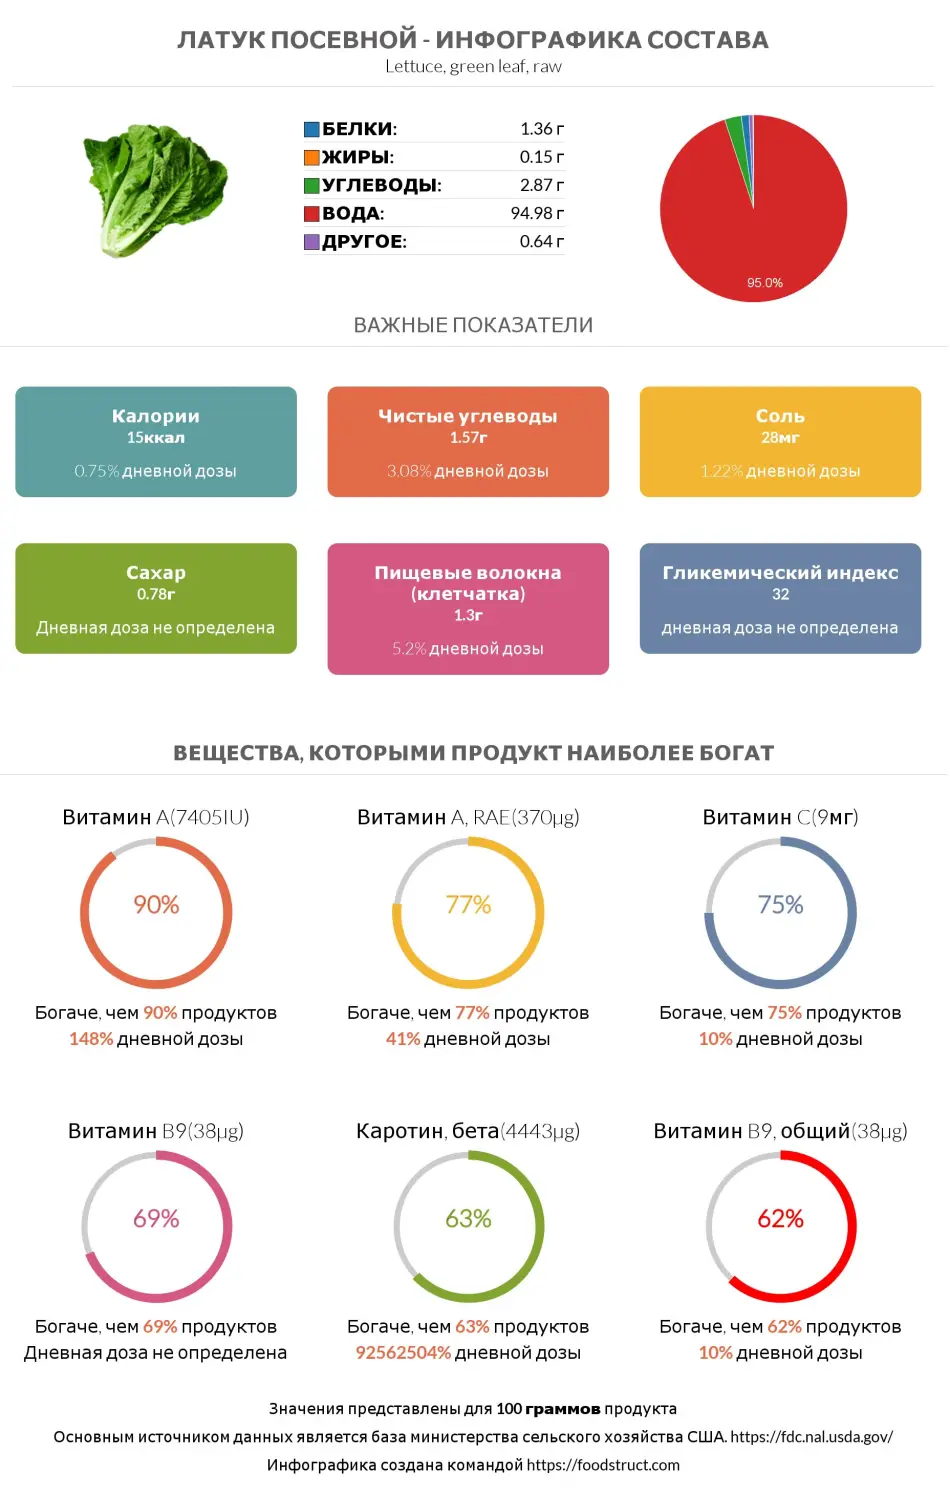 Инфографика состава и питательности для продукта Латук посевной